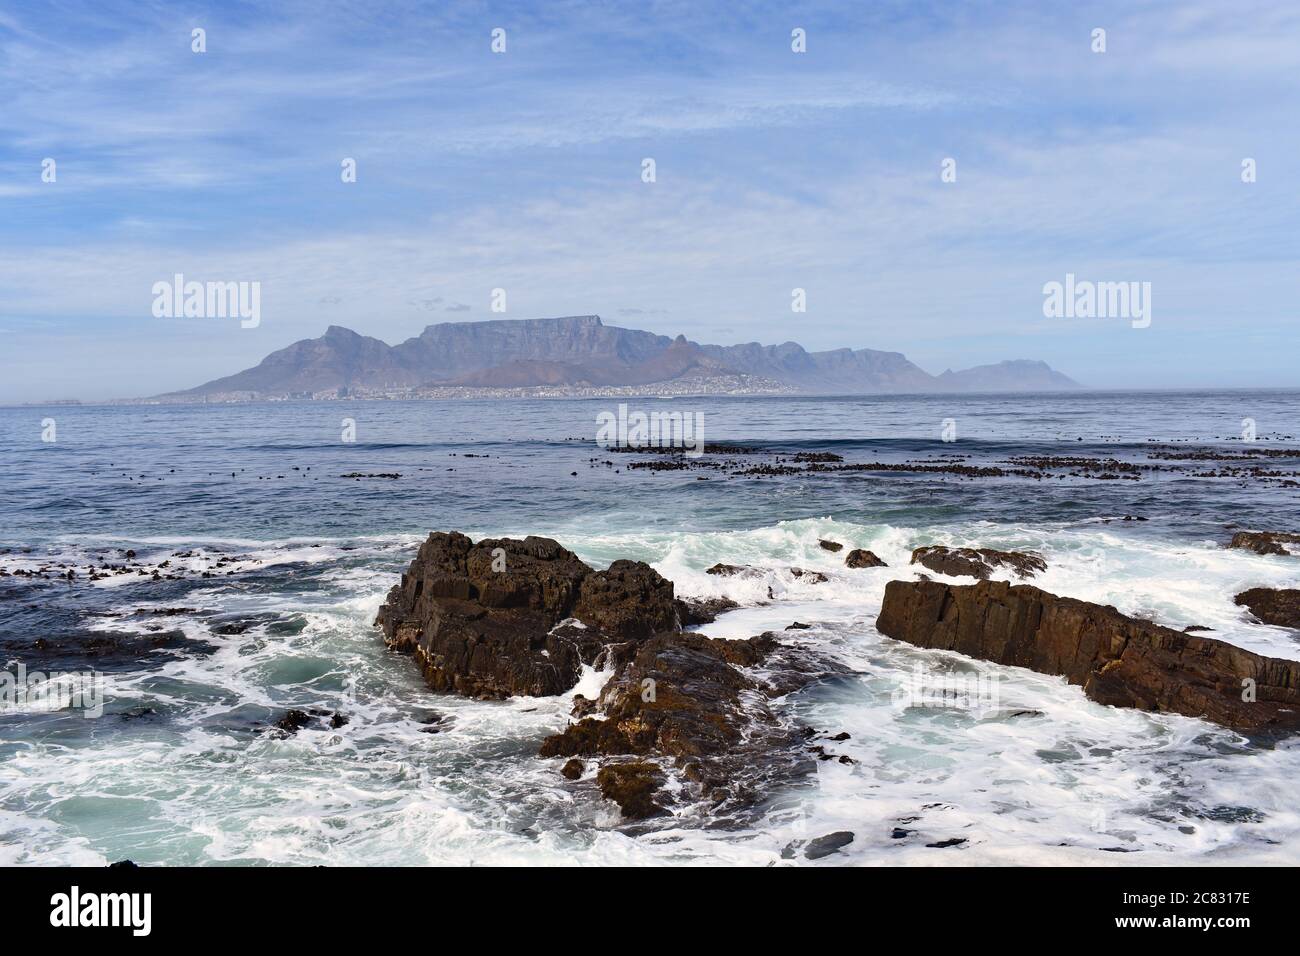 Tafelberg, Lions Head & Devils Peak von Robben Island aus gesehen, gegenüber der Table Bay. Der Ozean stürzt gegen die felsige Uferlinie. Stockfoto